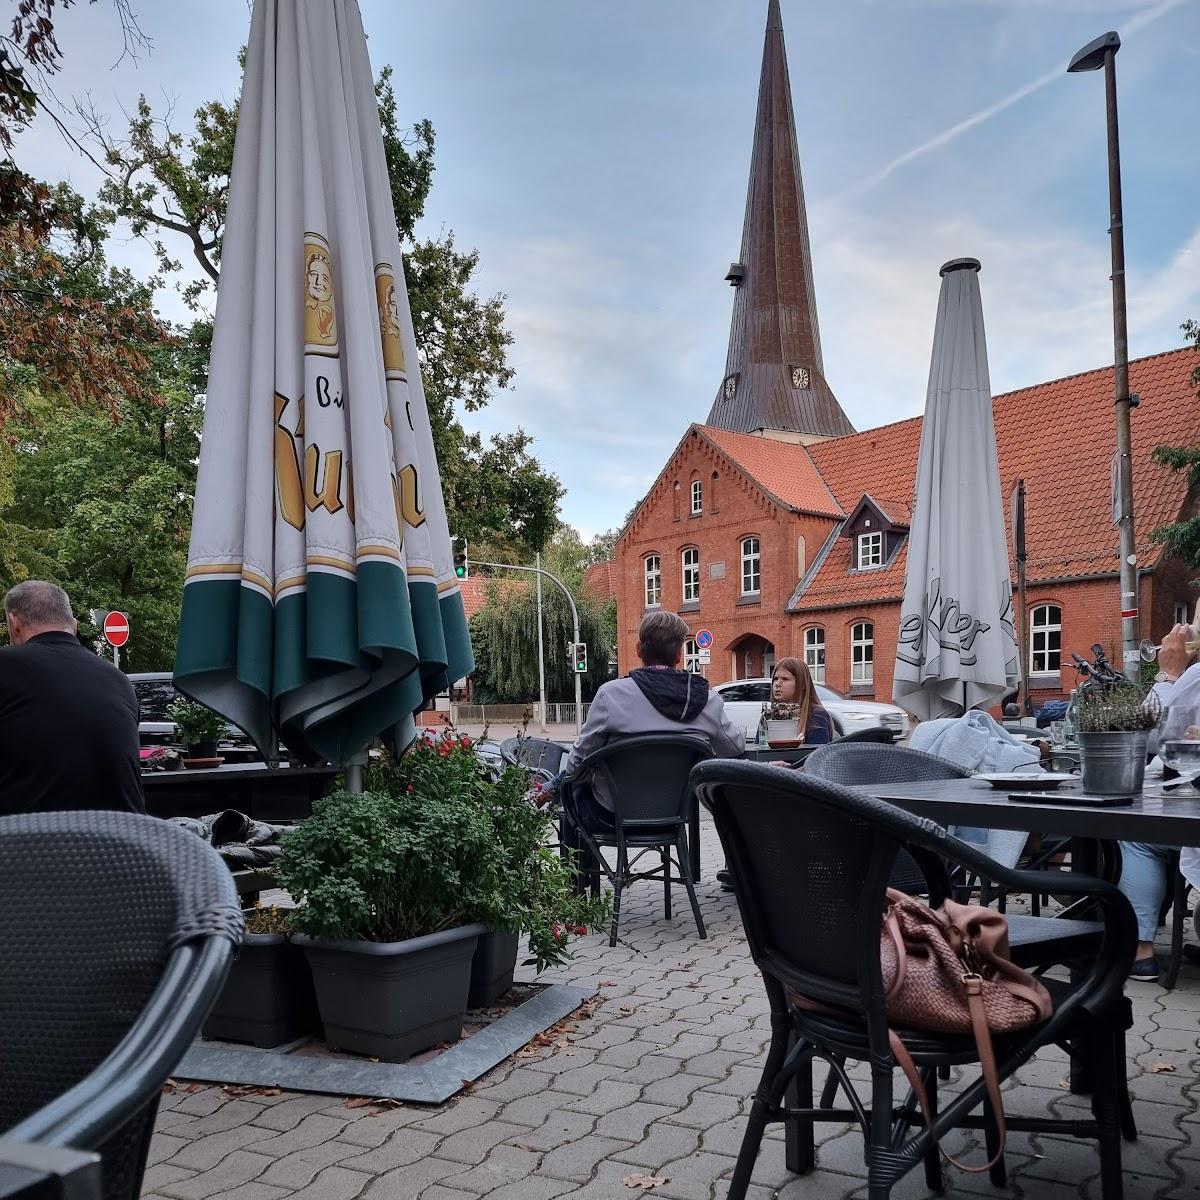 Restaurant "Gaststätte am Markt" in Burgwedel